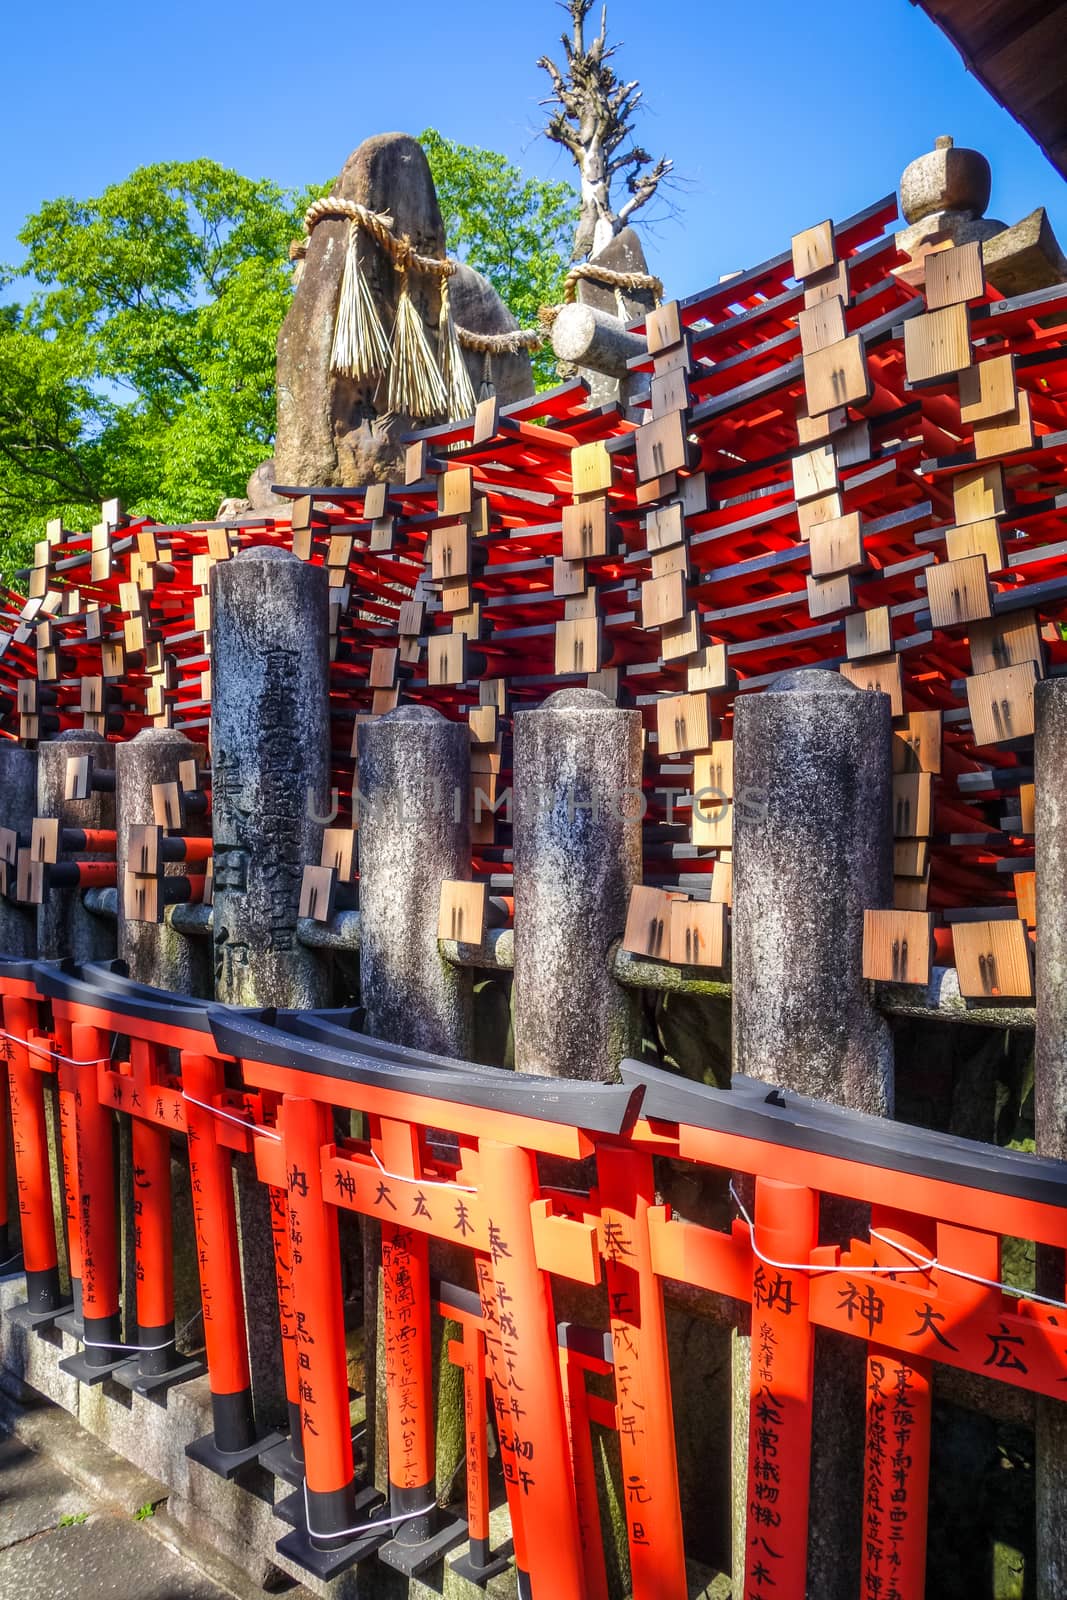 Gifts at Fushimi Inari Taisha, Kyoto, Japan by daboost